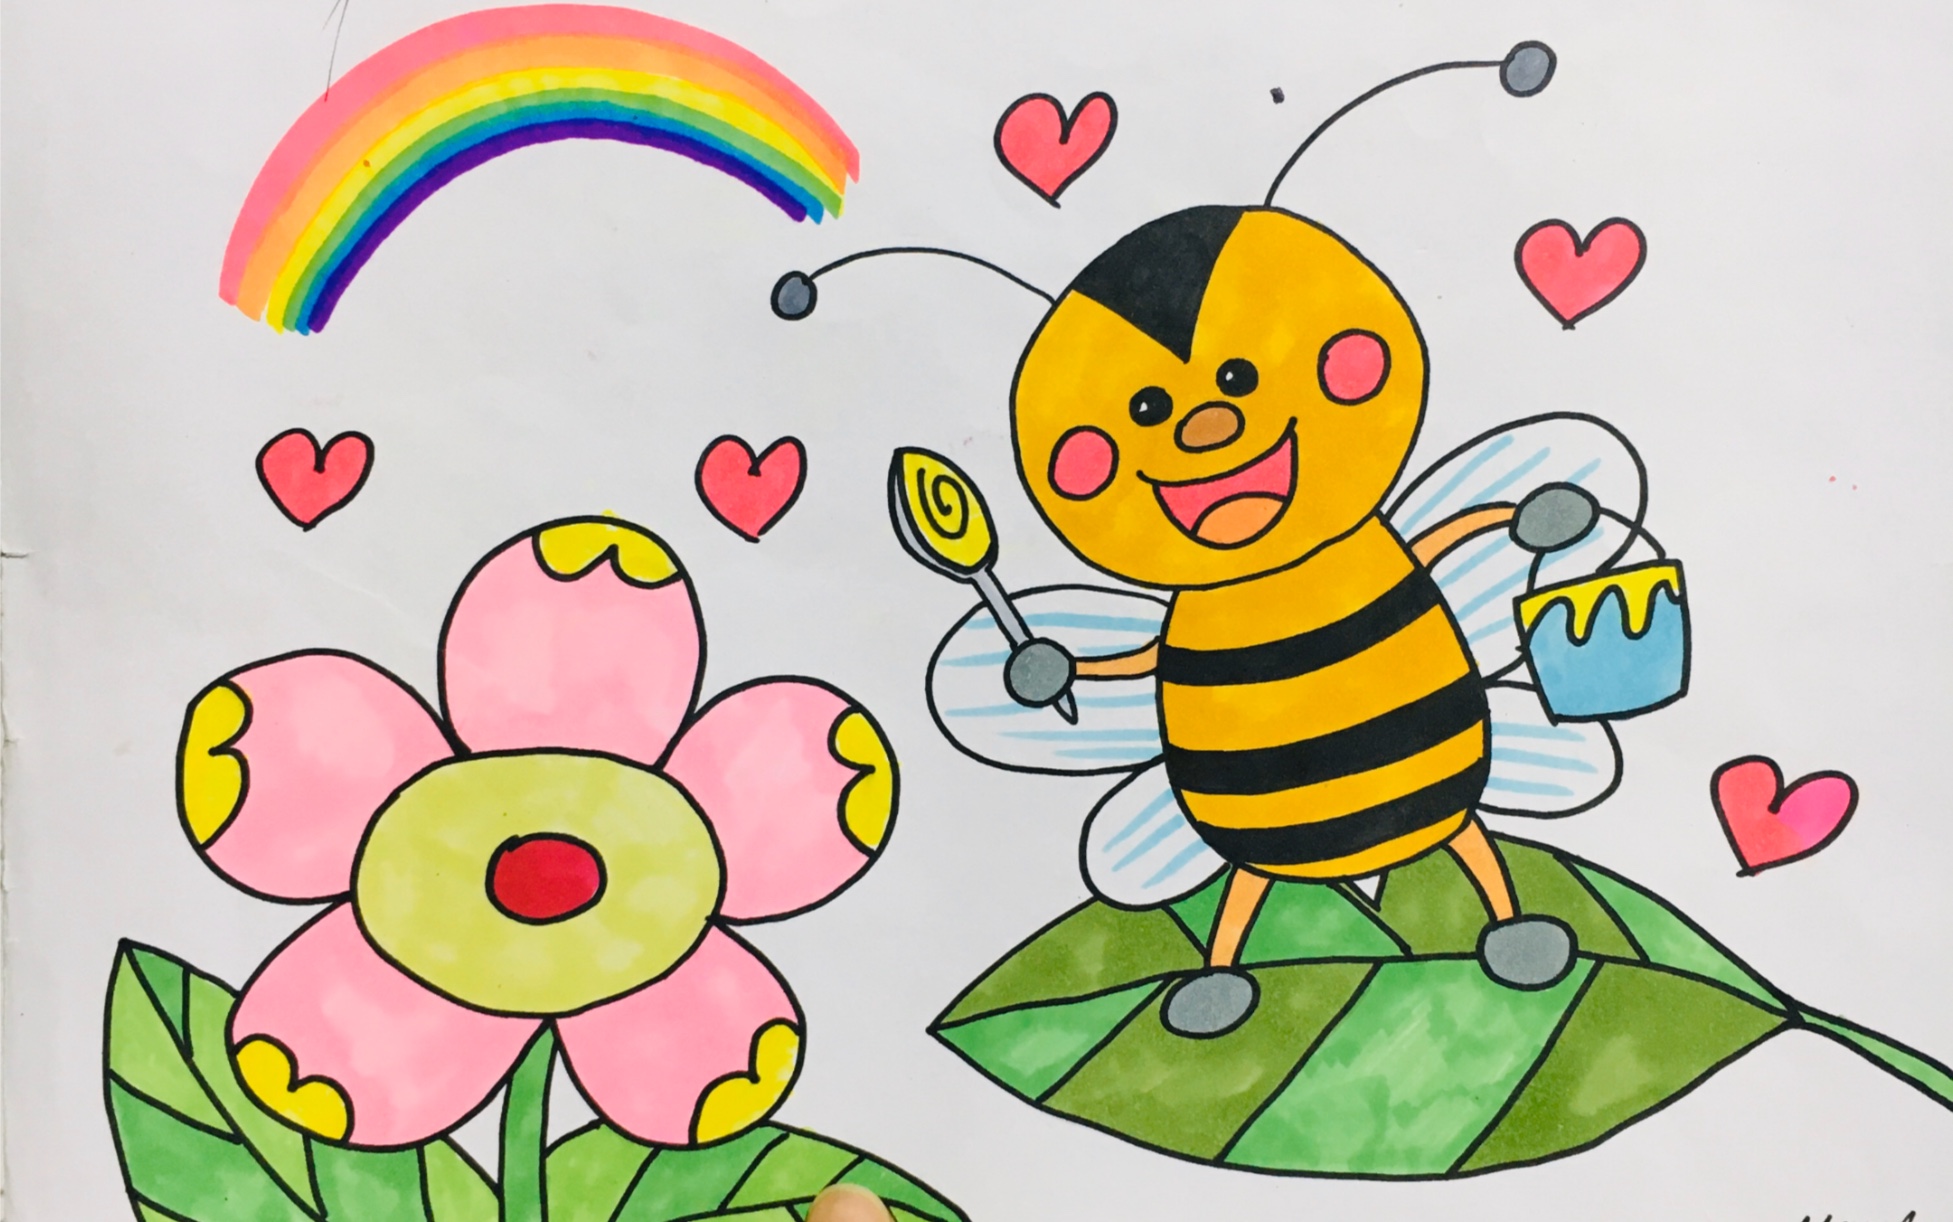 蜜蜂采蜜画法图片